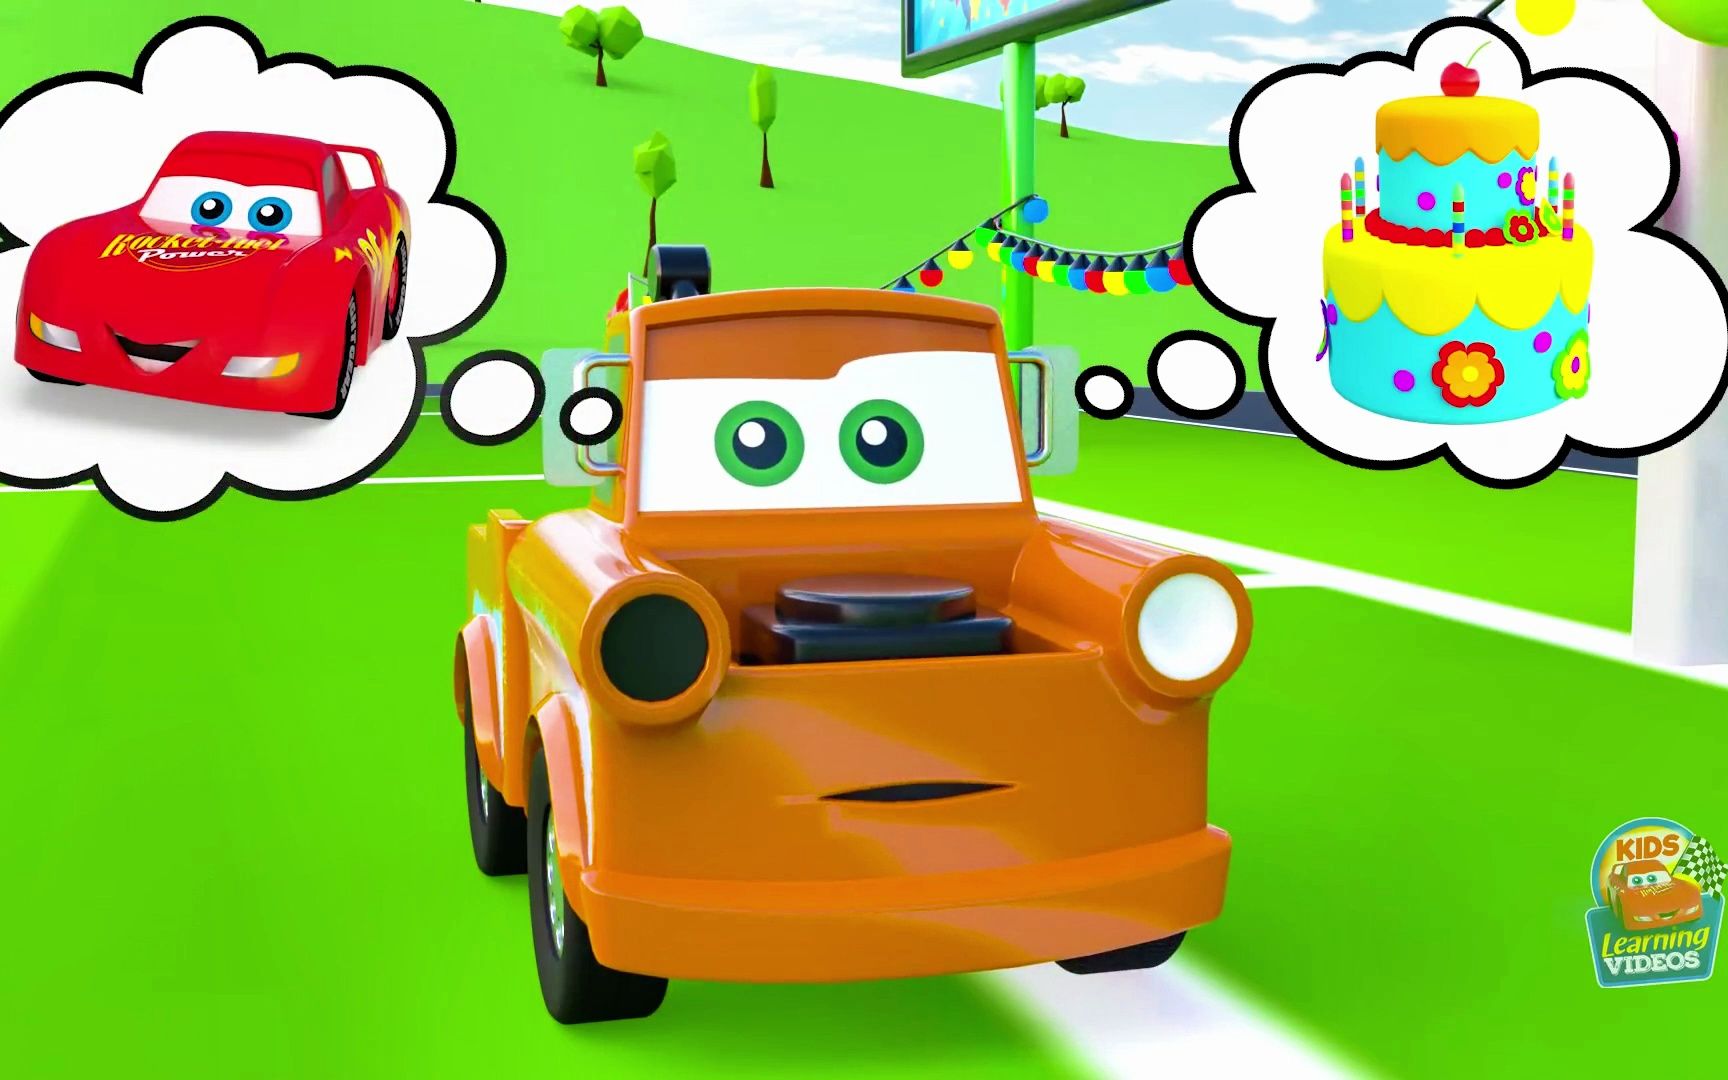 早教益智启蒙动画:这是儿童的工程车动画片,幼儿早教益智,赶快来看吧!